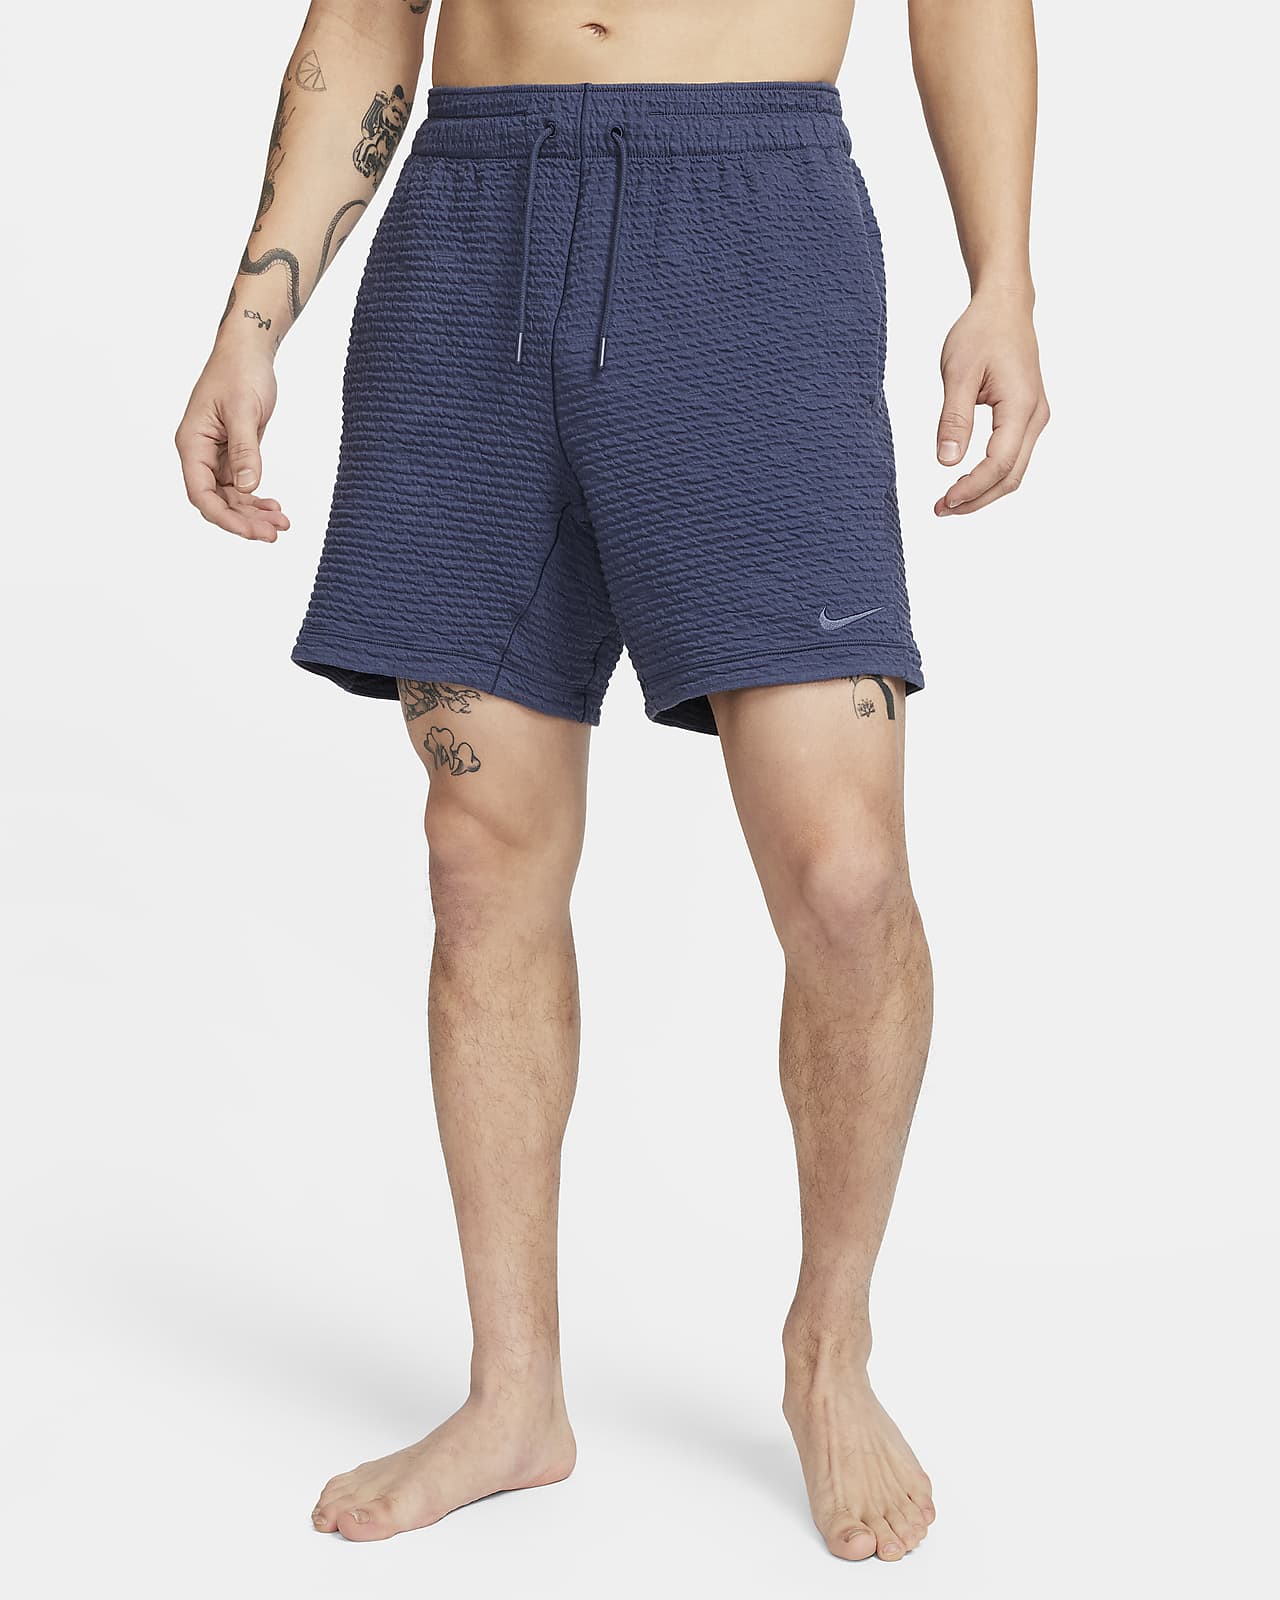 Nike Yoga Men's Dri-FIT 7" Unlined Shorts